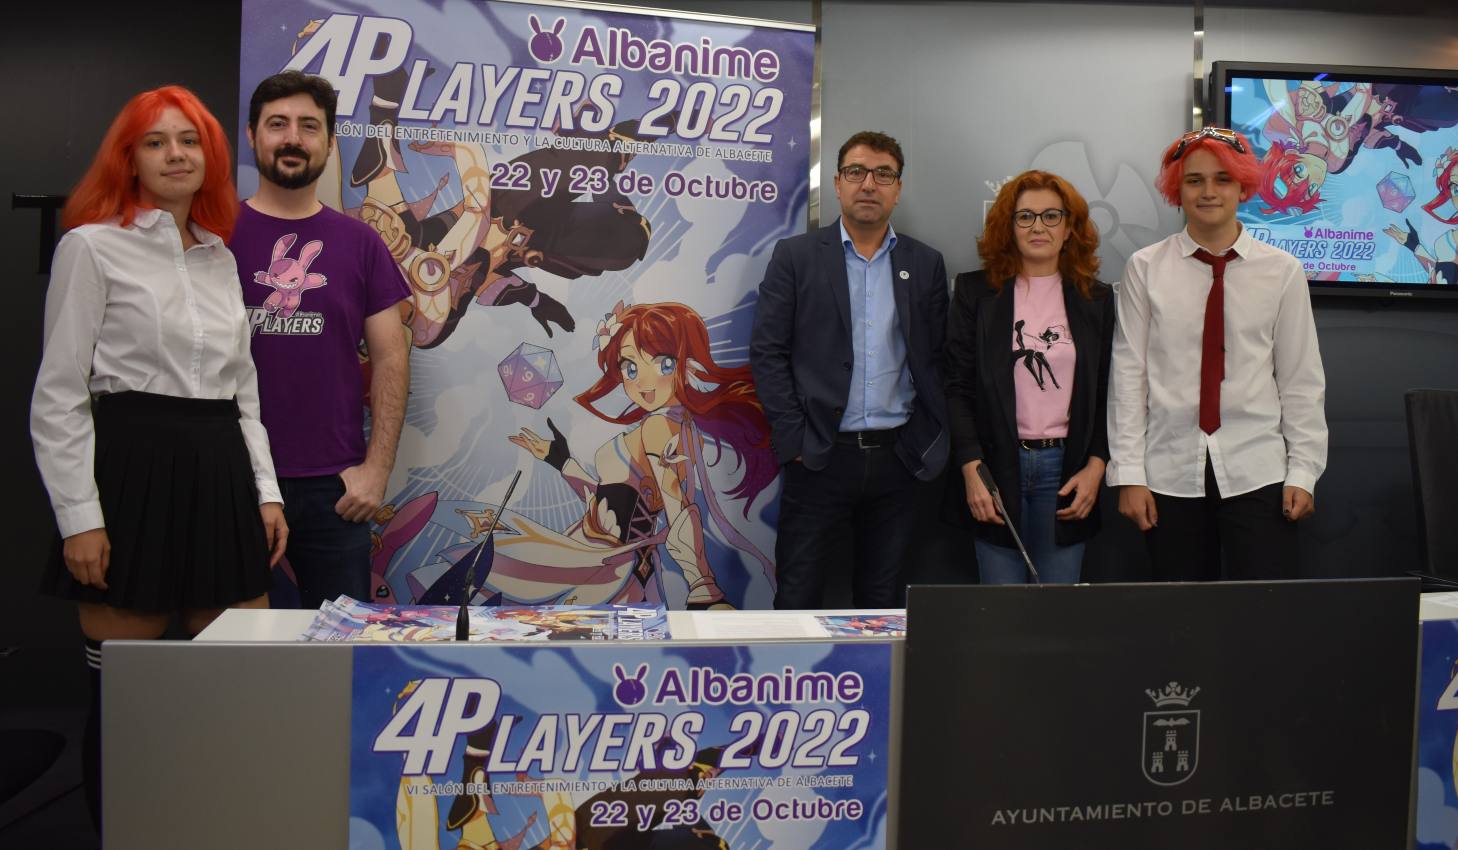 El Ayuntamiento y la Diputación de Albacete presentan la VI edición de "Albanime 4Players".